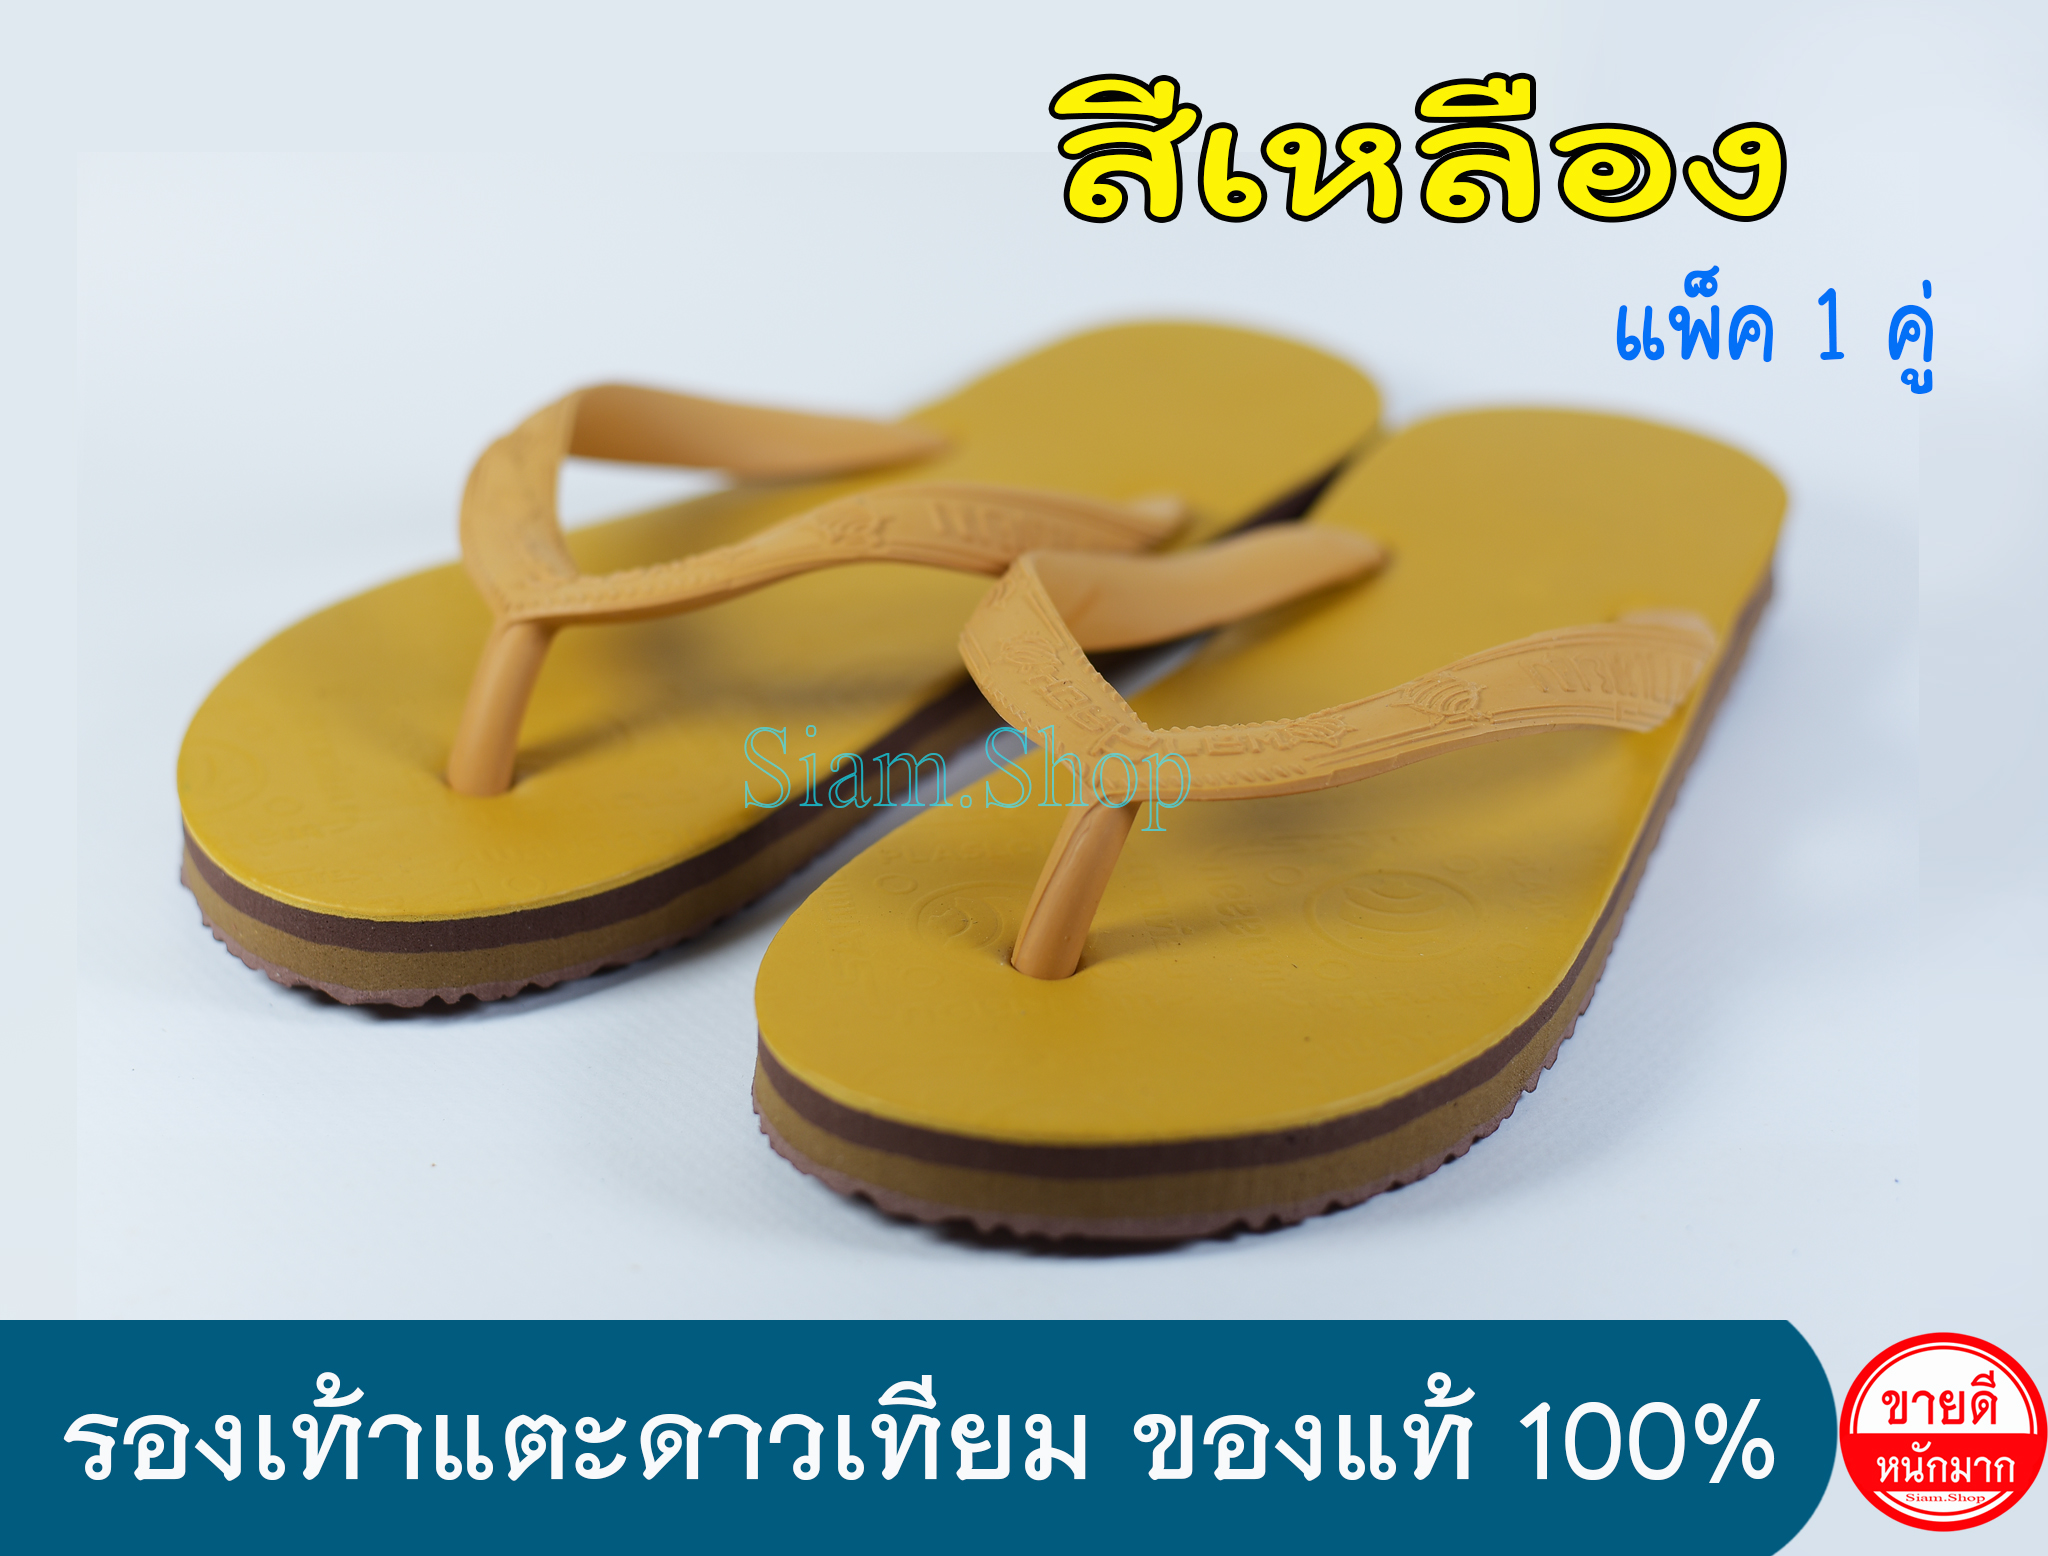 รองเท้าแตะดาวเทียมสีเหลือง สีพระ รองเท้าถวายพระ รองเท้าดาวเทียมของแท้ 100% เบอร์รองเท้า=ความยาว(นิ้ว)